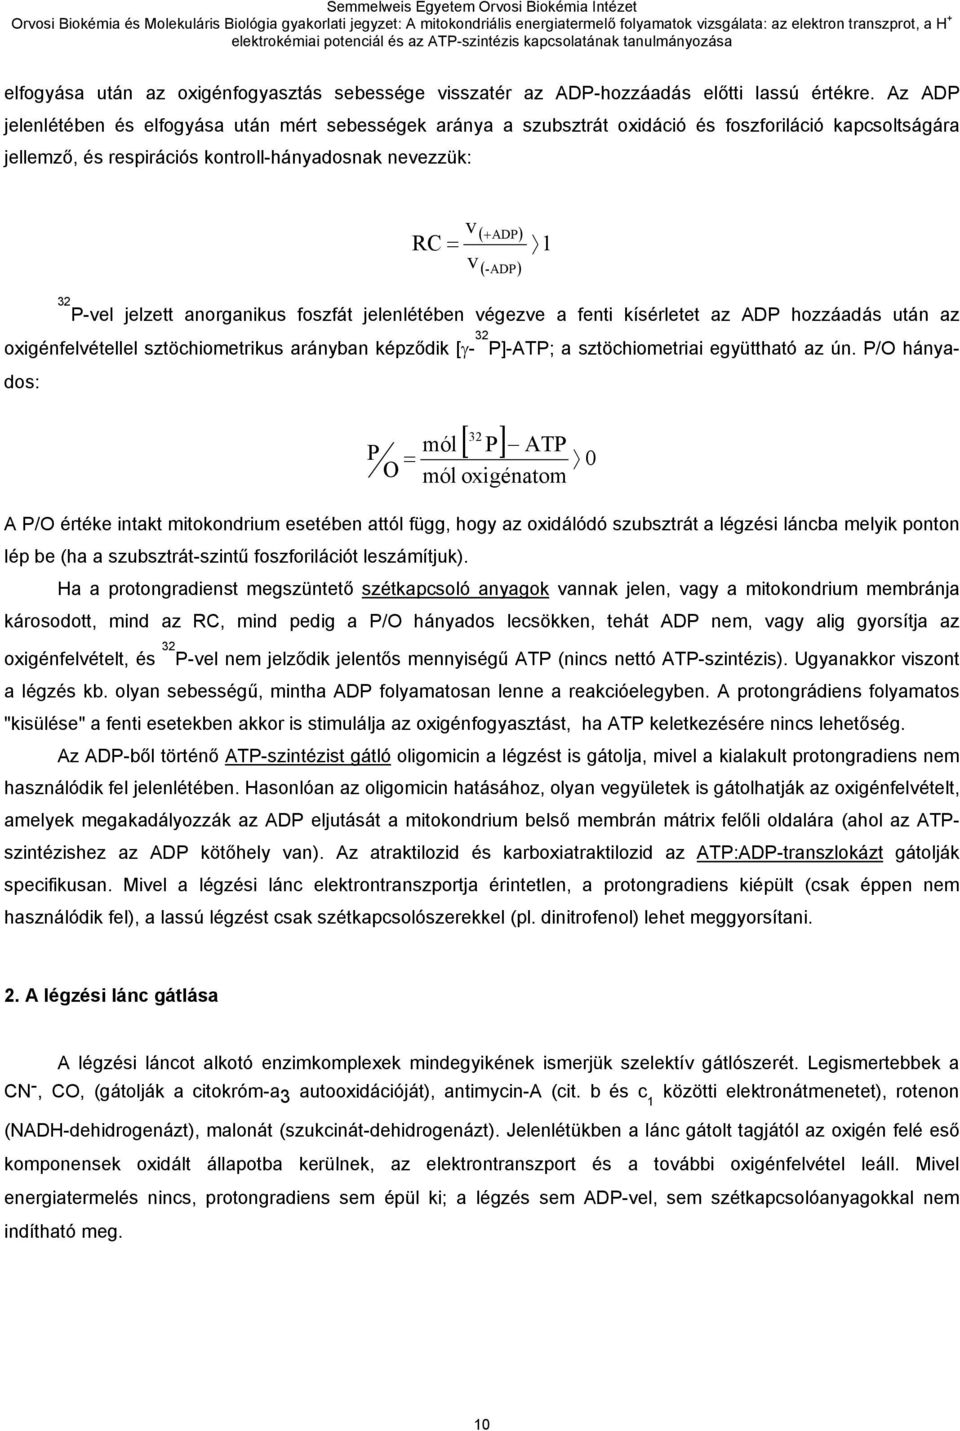 32 P-vel jelzett anorganikus foszfát jelenlétében végezve a fenti kísérletet az ADP hozzáadás után az oxigénfelvétellel sztöchiometrikus arányban képződik [γ- 32 P]-ATP; a sztöchiometriai együttható